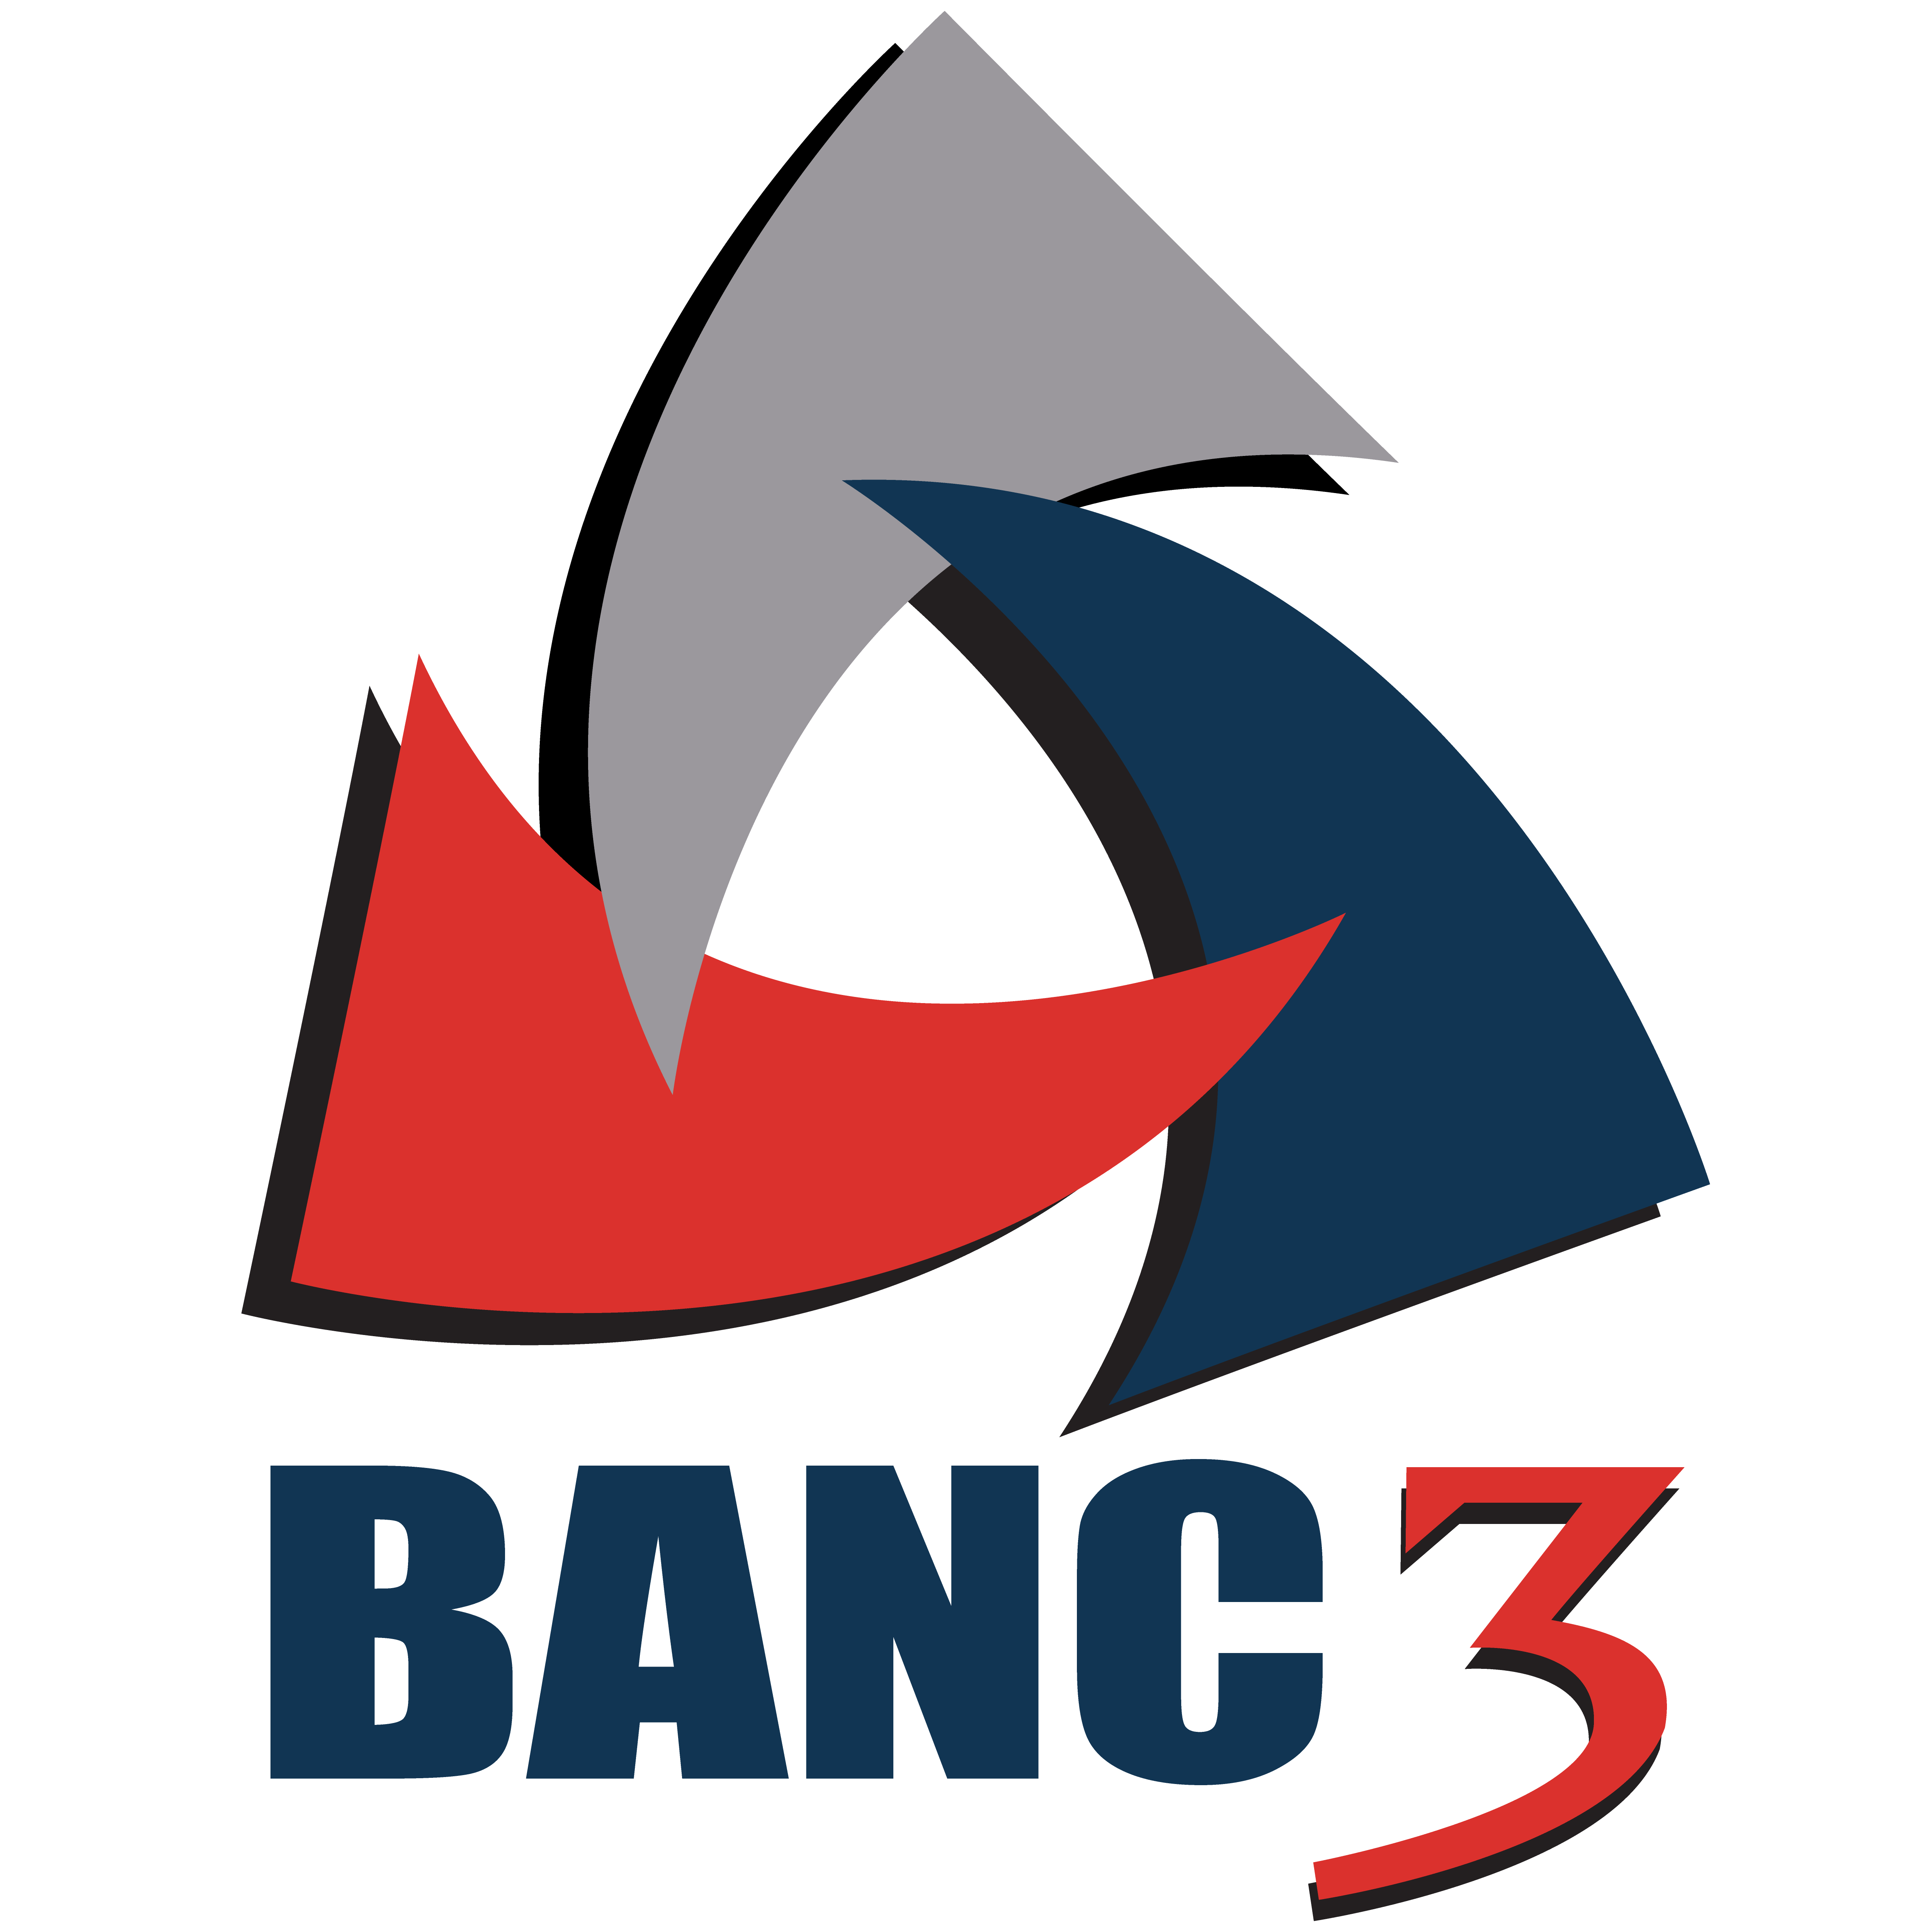 BANC3-Logo_MASTER.png